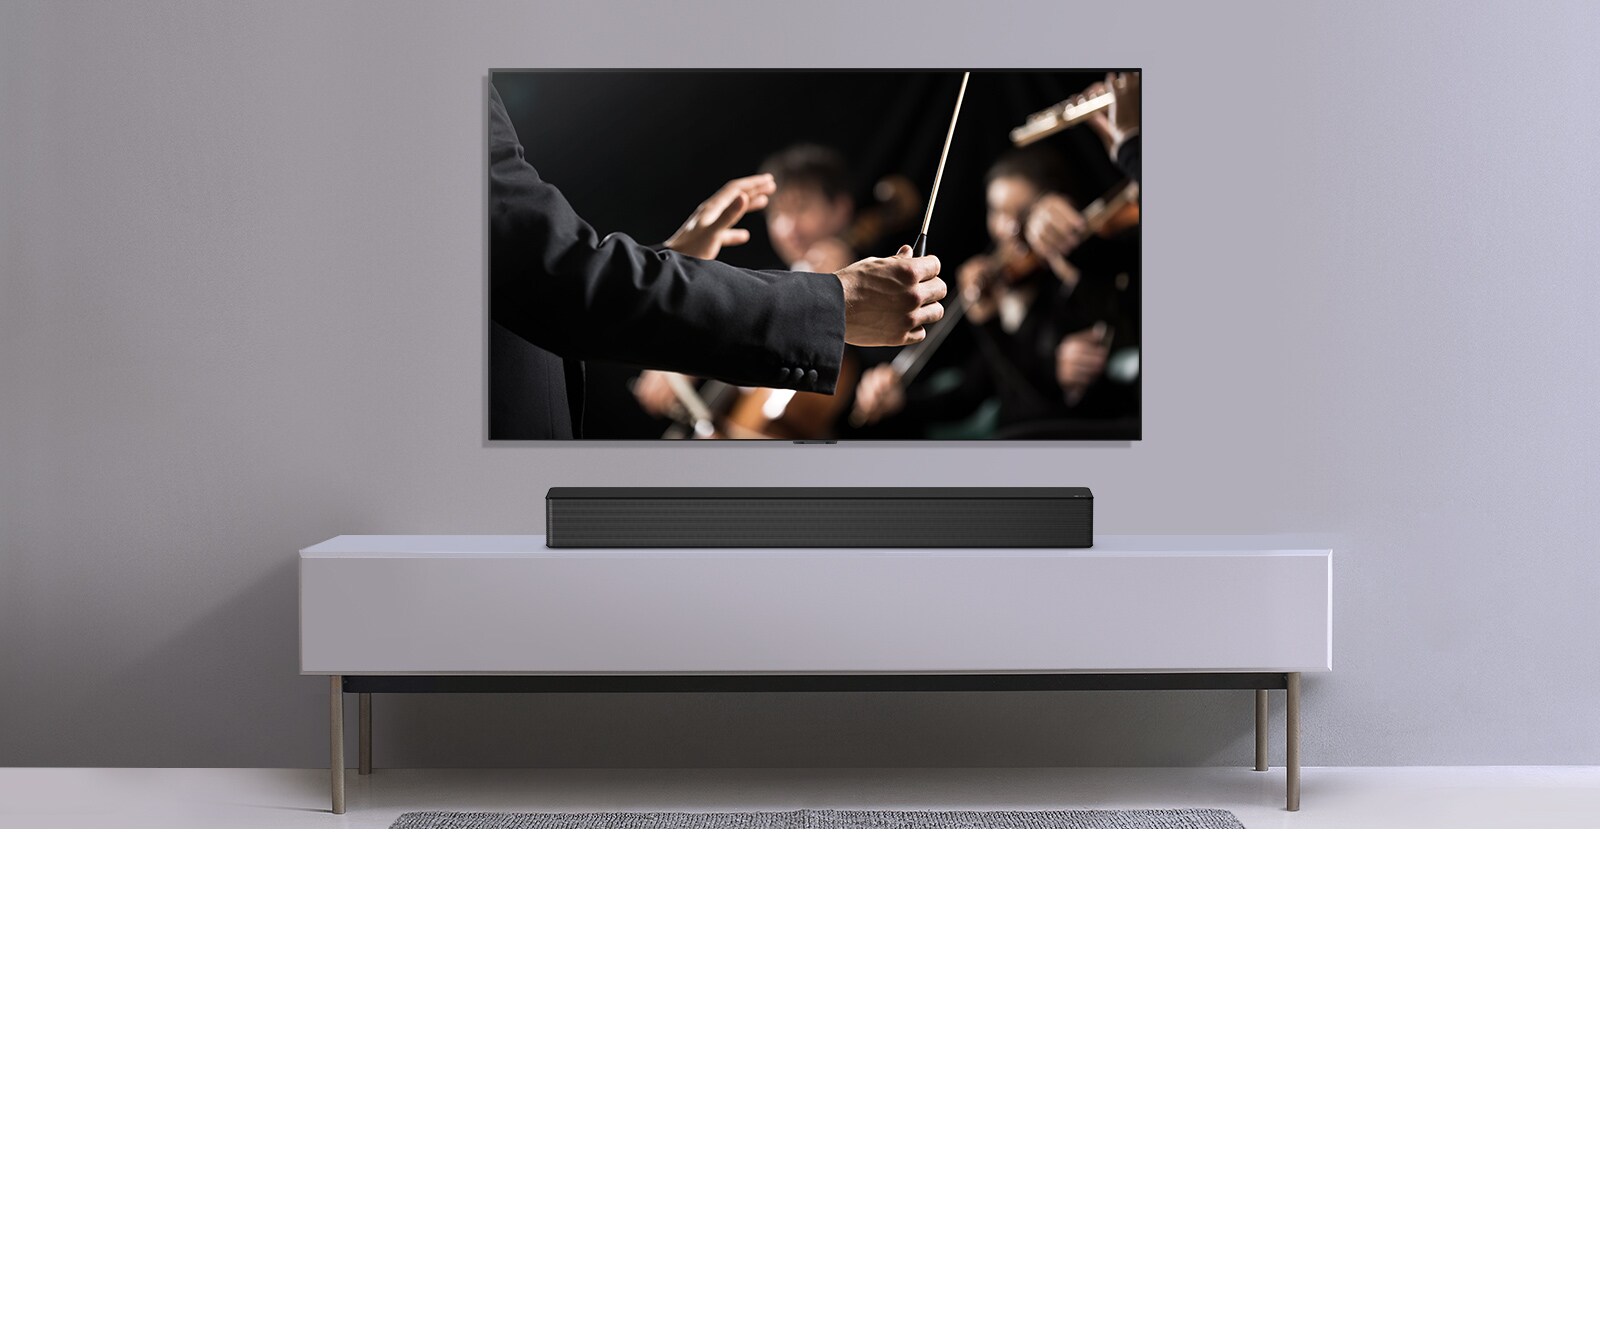 TV được hiển thị trên một bức tường màu xám và Loa thanh LG đặt bên dưới trên kệ màu xám. TV hiển thị một nhạc trưởng đang điều khiển dàn nhạc.